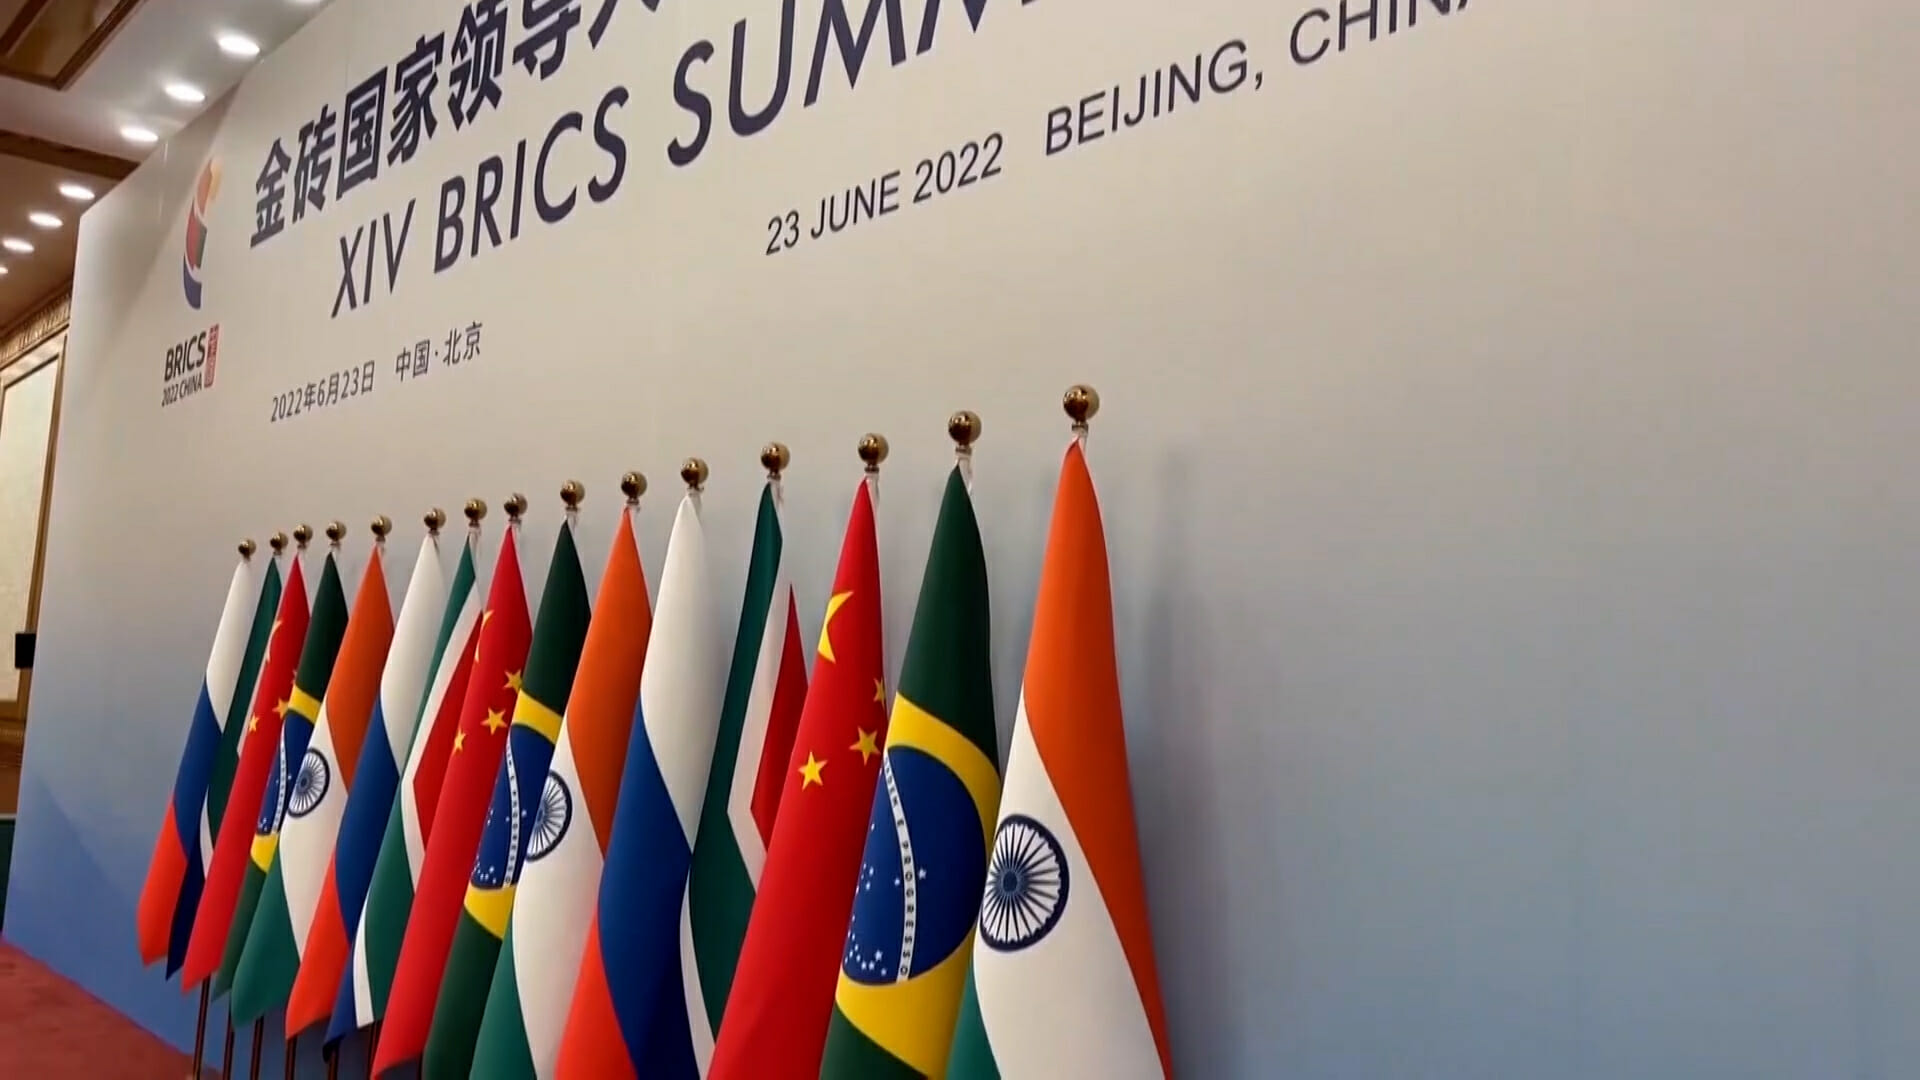 انضمام جنوب أفريقيا إلى مجموعة دول البريكس BRICS